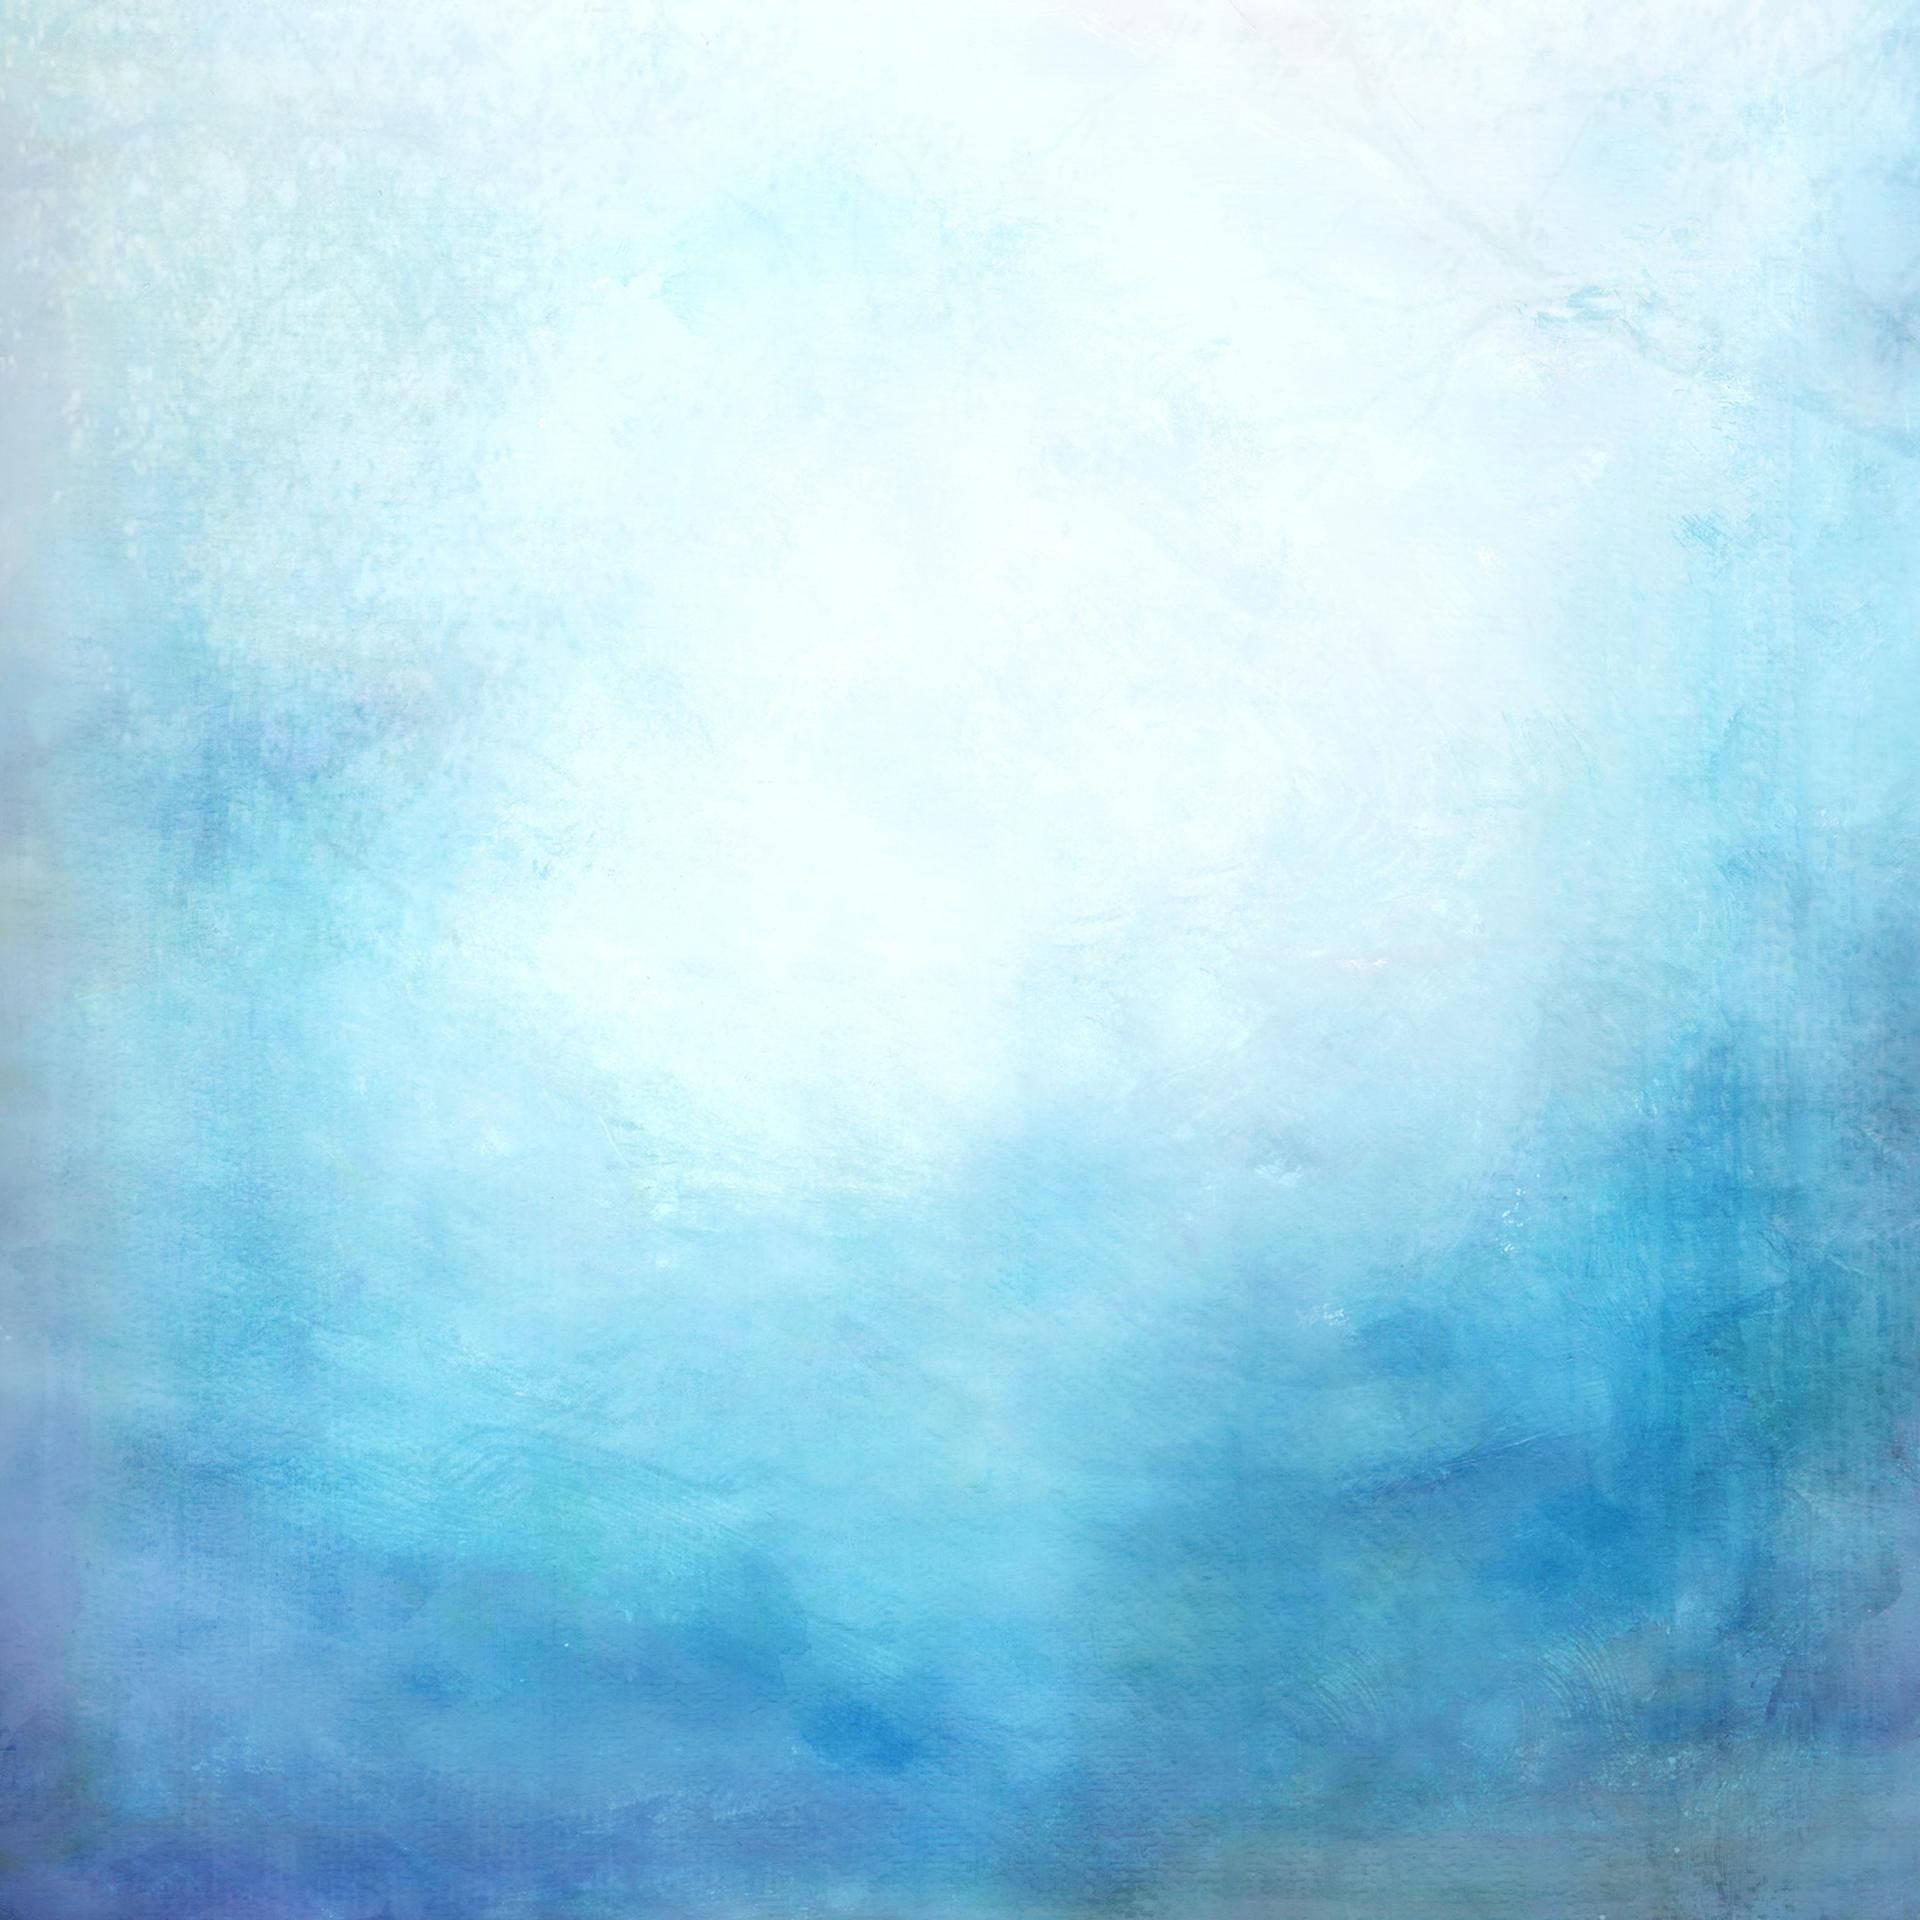 Pinturade Degradado Azul Sobre Blanco. Fondo de pantalla